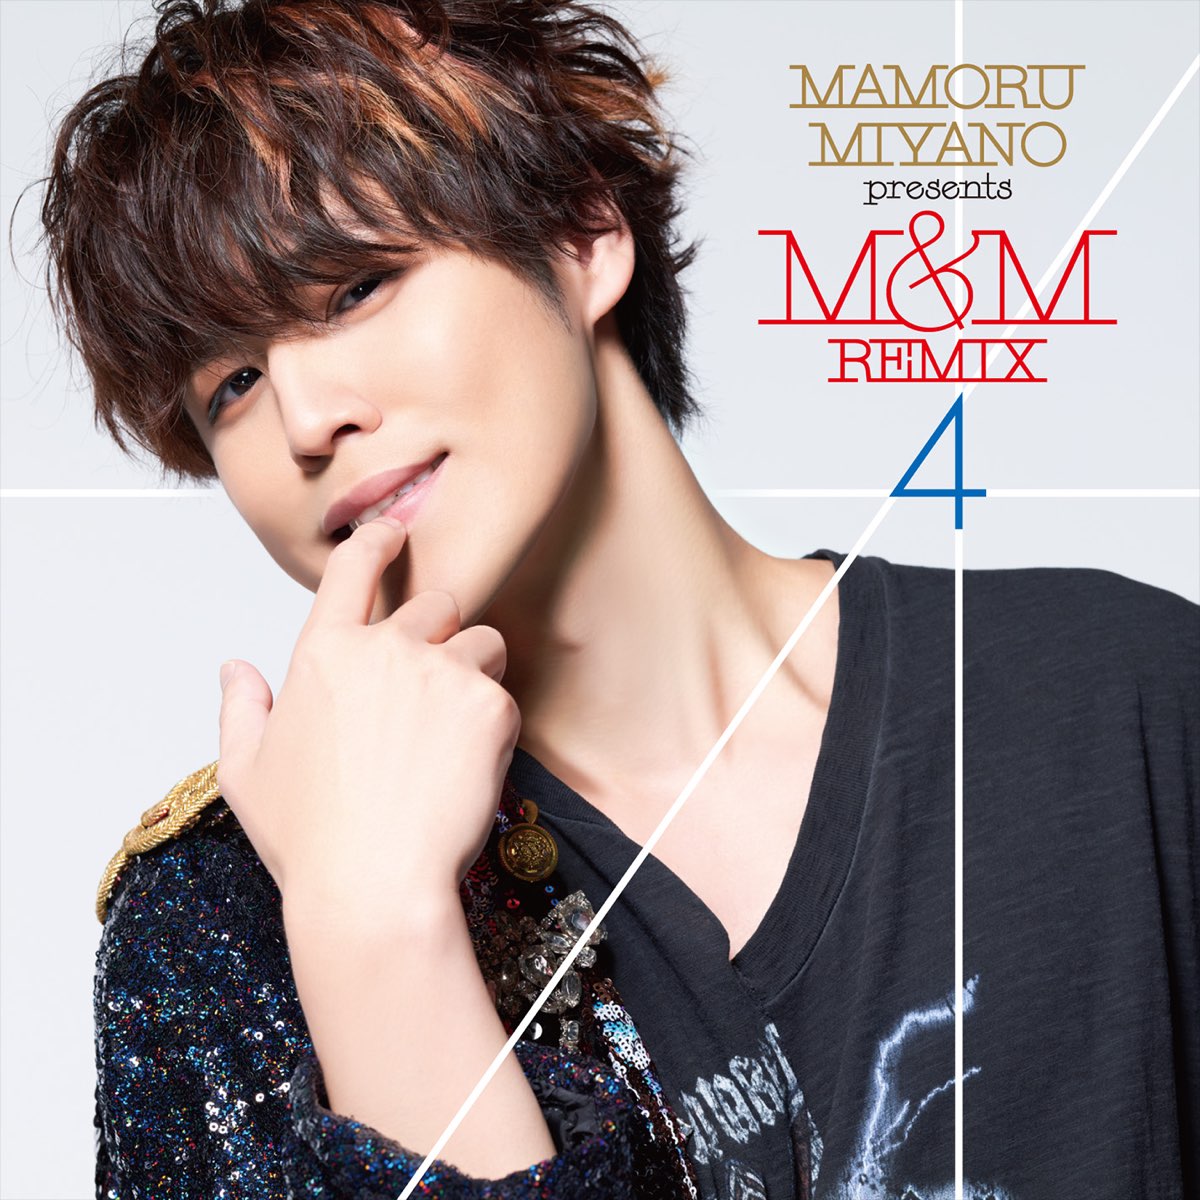 MAMORU MIYANO presents M&M REMIX4 - Single - Album by Mamoru